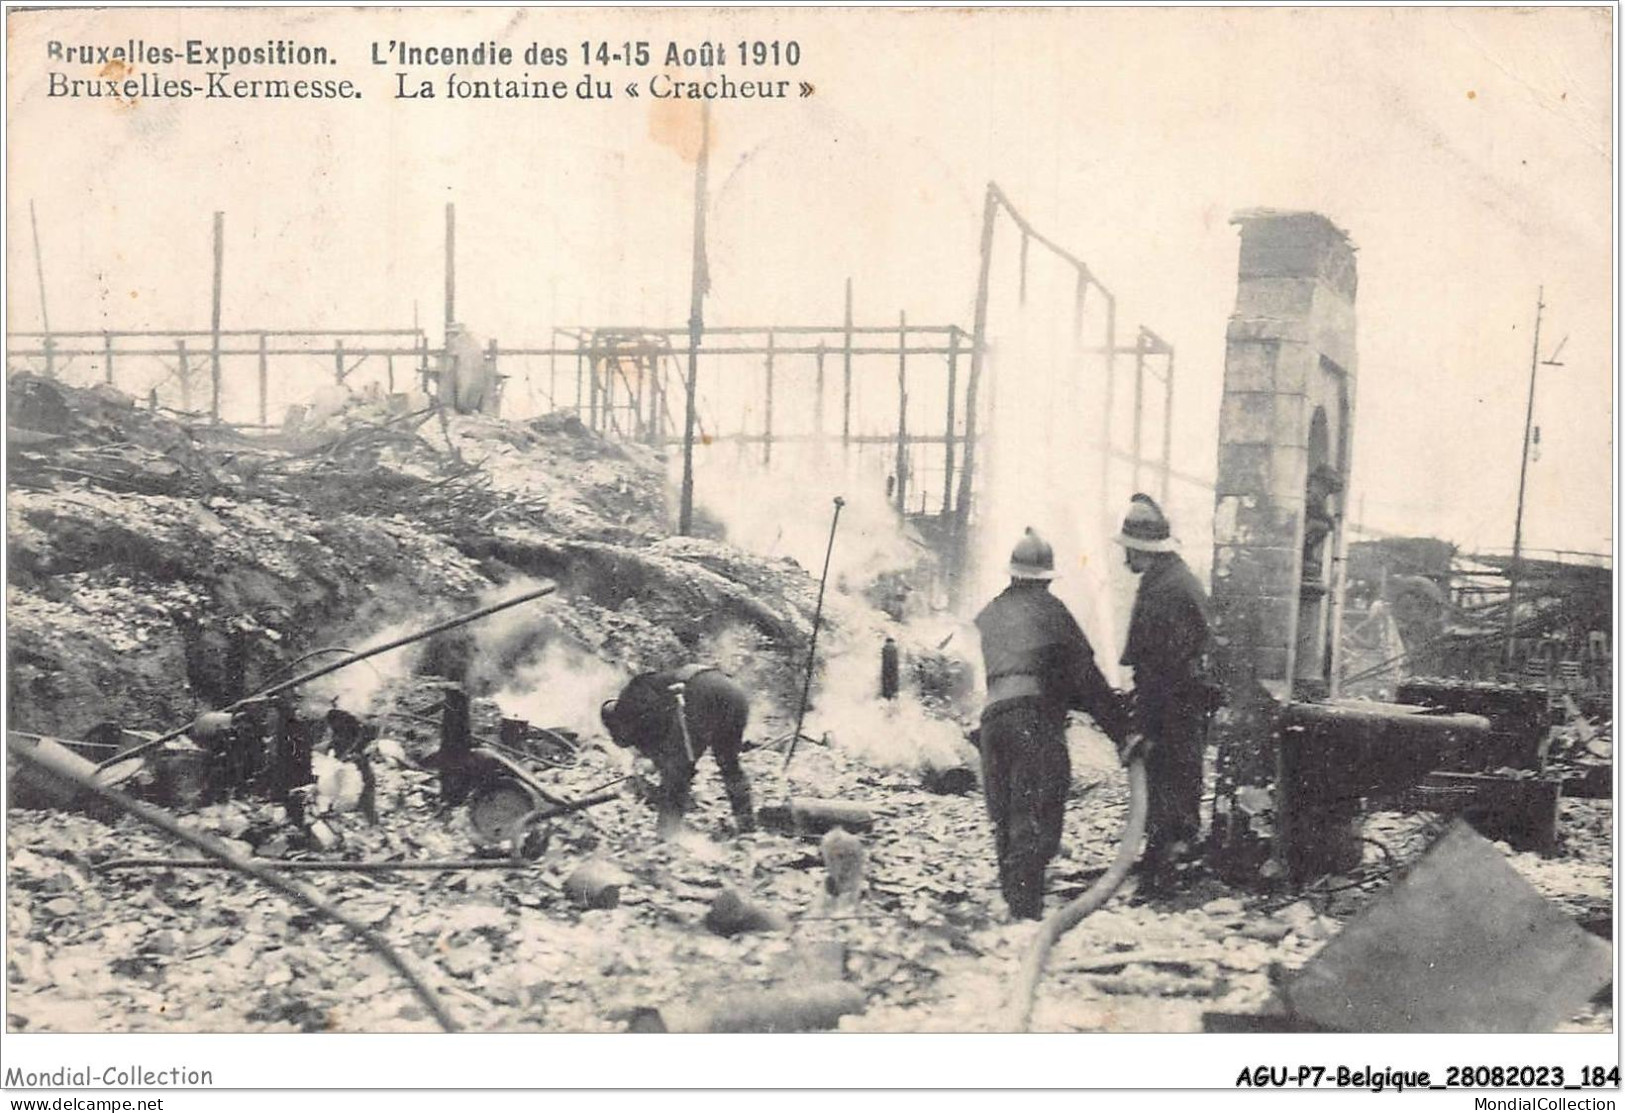 AGUP7-0621-BELGIQUE - BRUXELLES-KERMESSE - L'incendie Des 14-15 Août 1910 - La Fontaine Du - Cracheur - Weltausstellungen